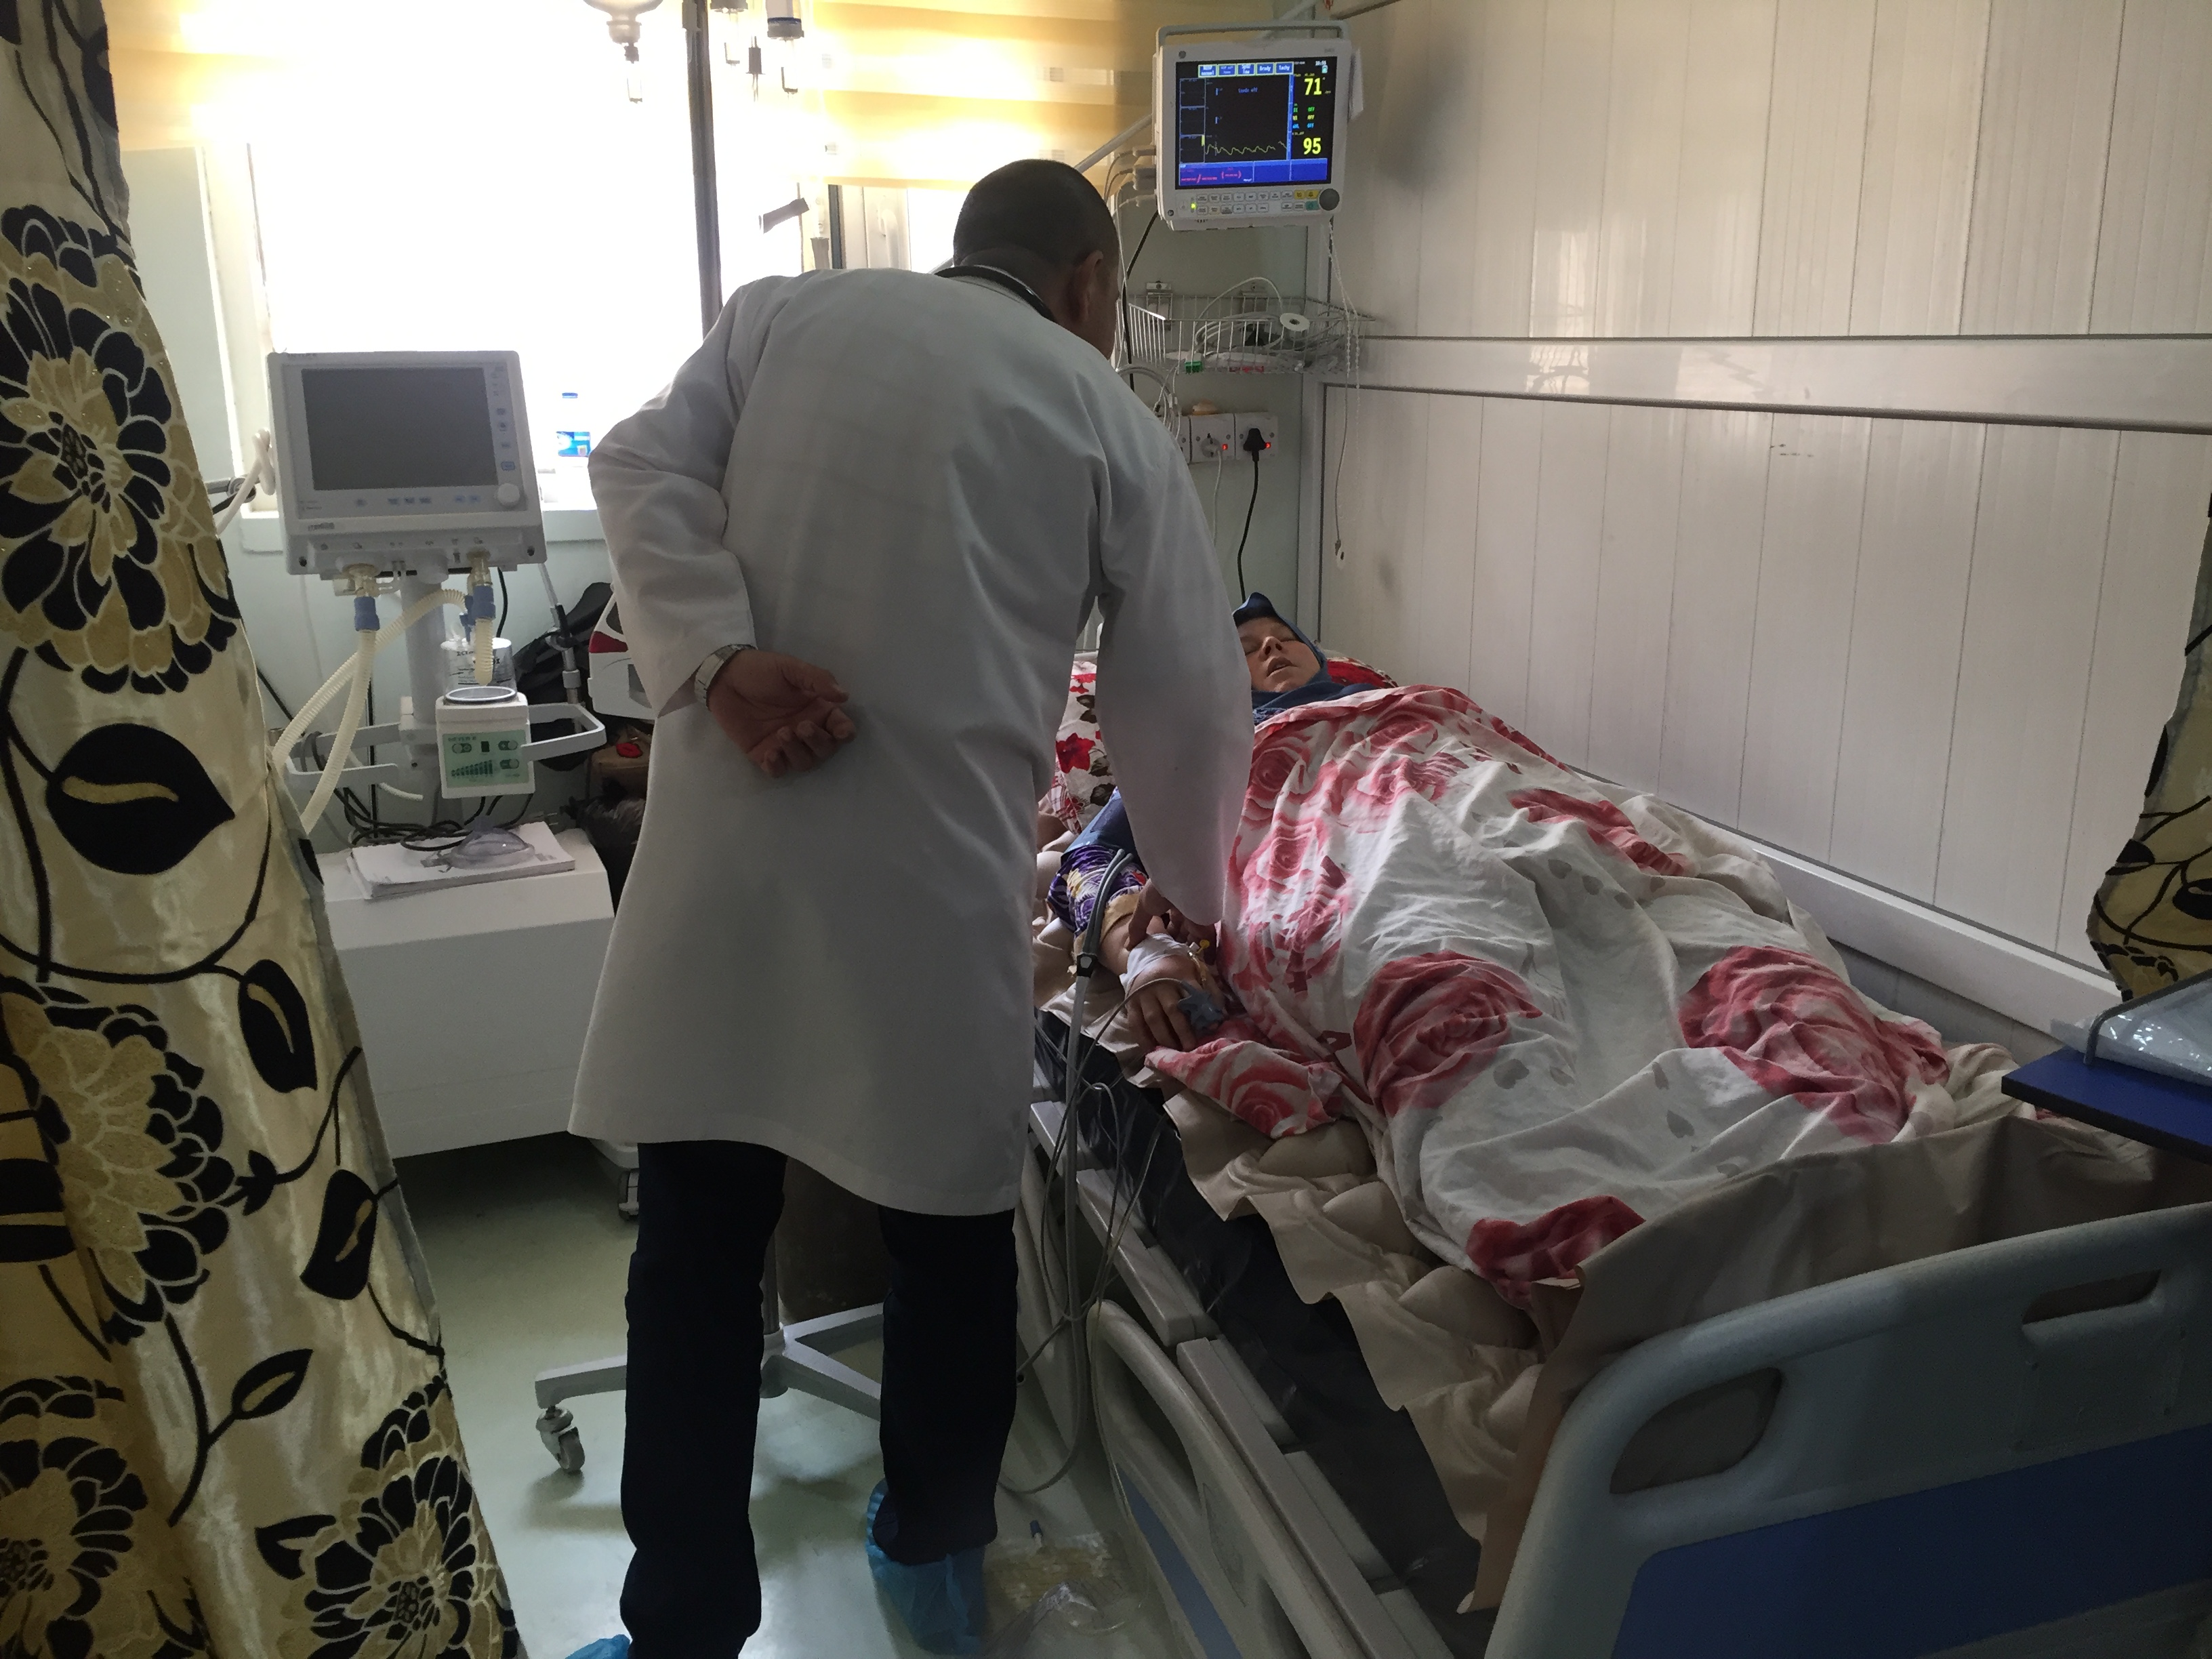 الرعاية المركزة في العراق: الفرق بين الحياة والموت ل 1.5 مليون إنسان